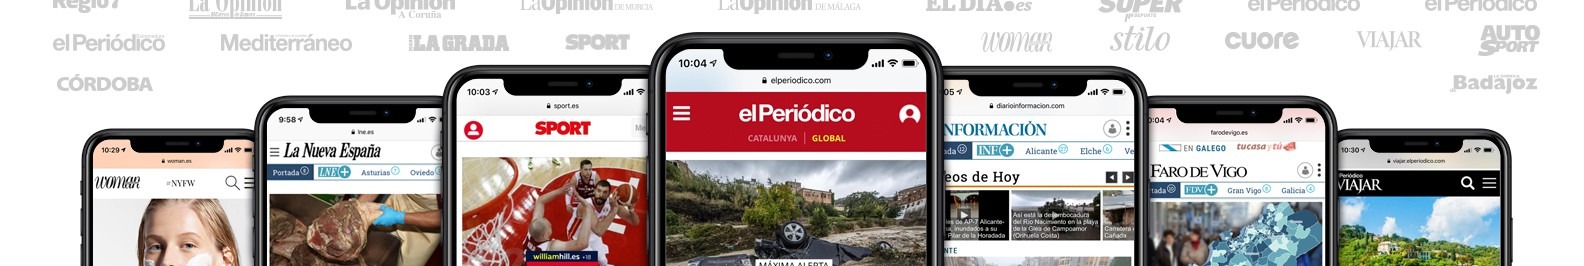 Prensa Ibérica background